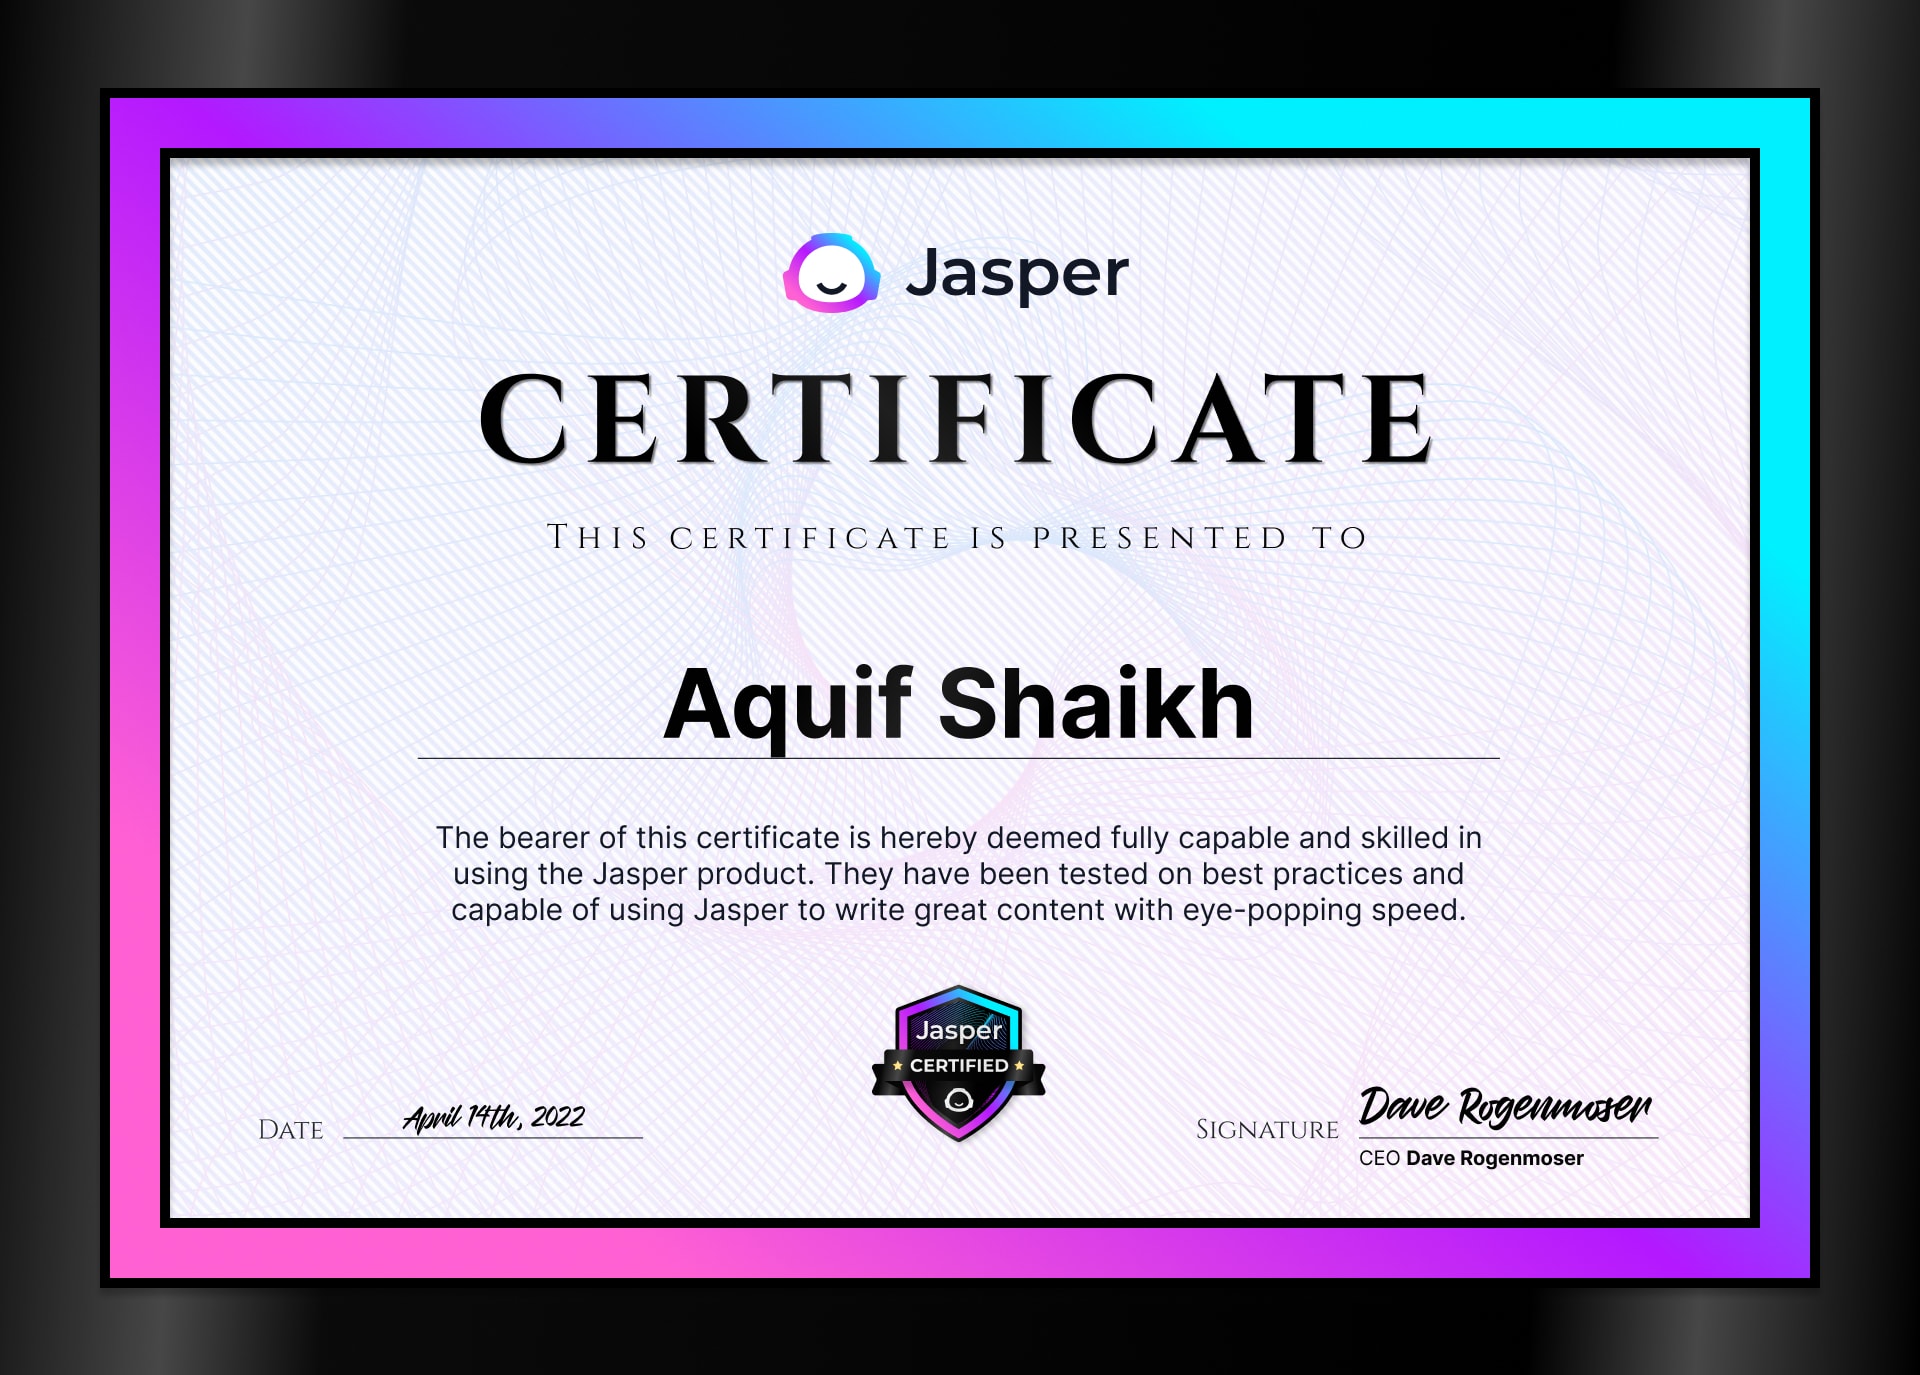 Jasper Certificate